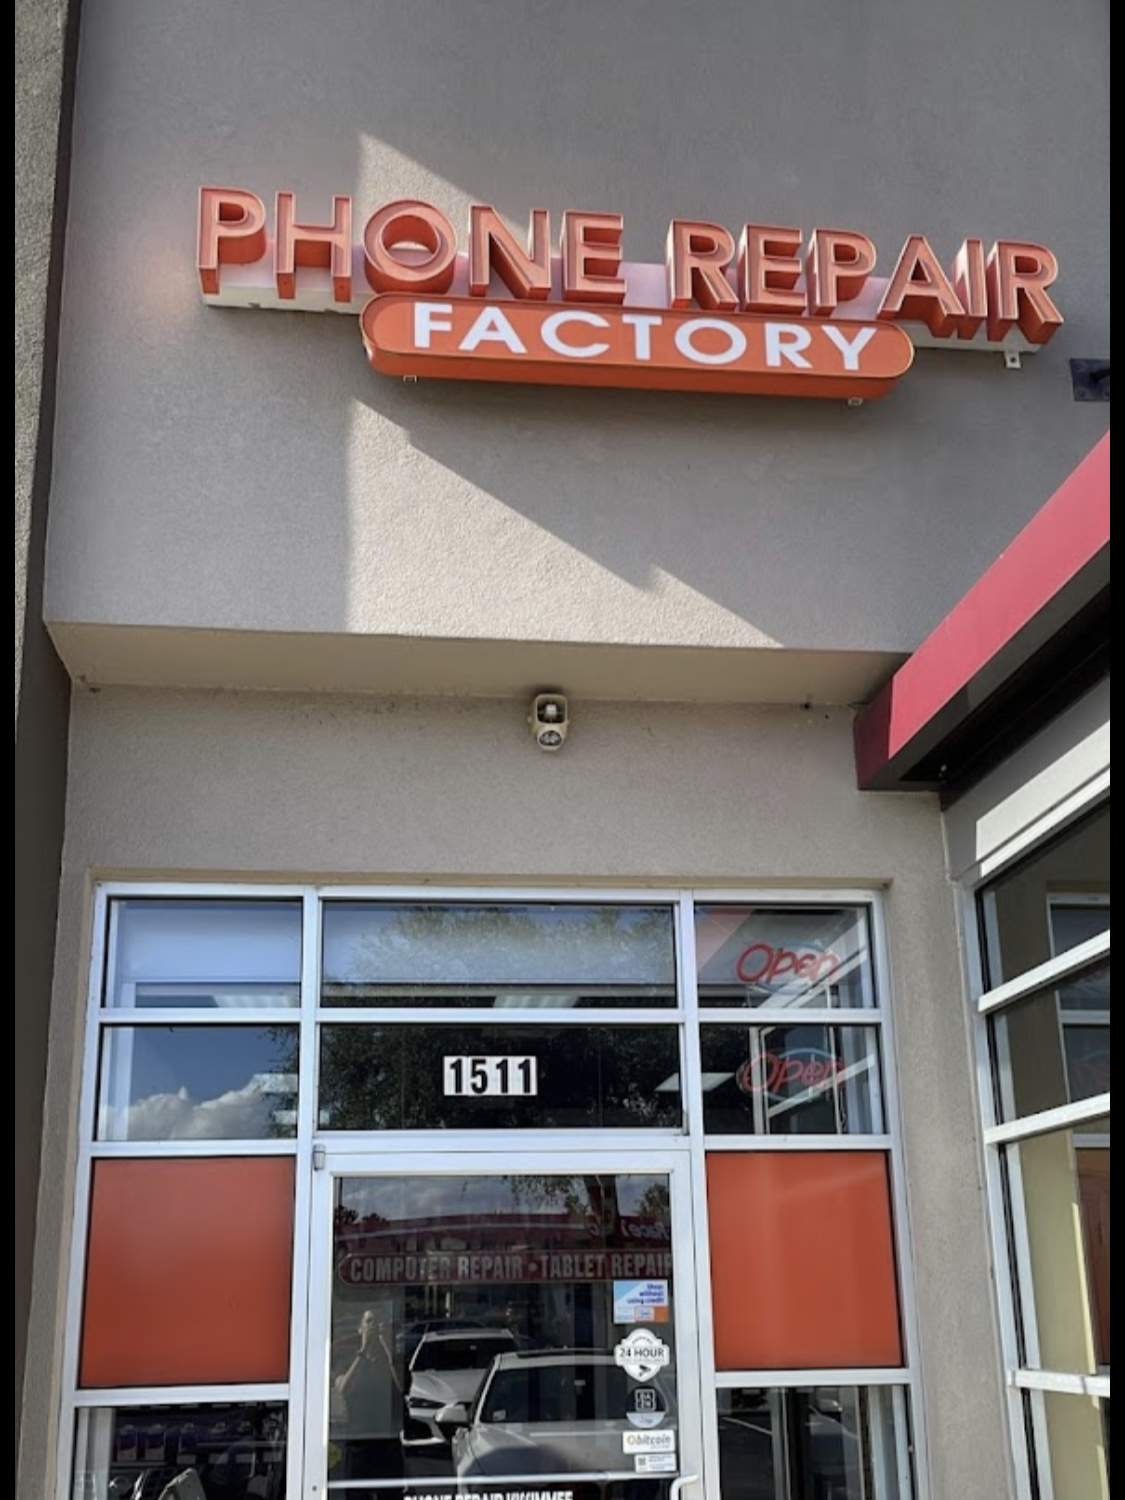 Phone Repair Central Florida